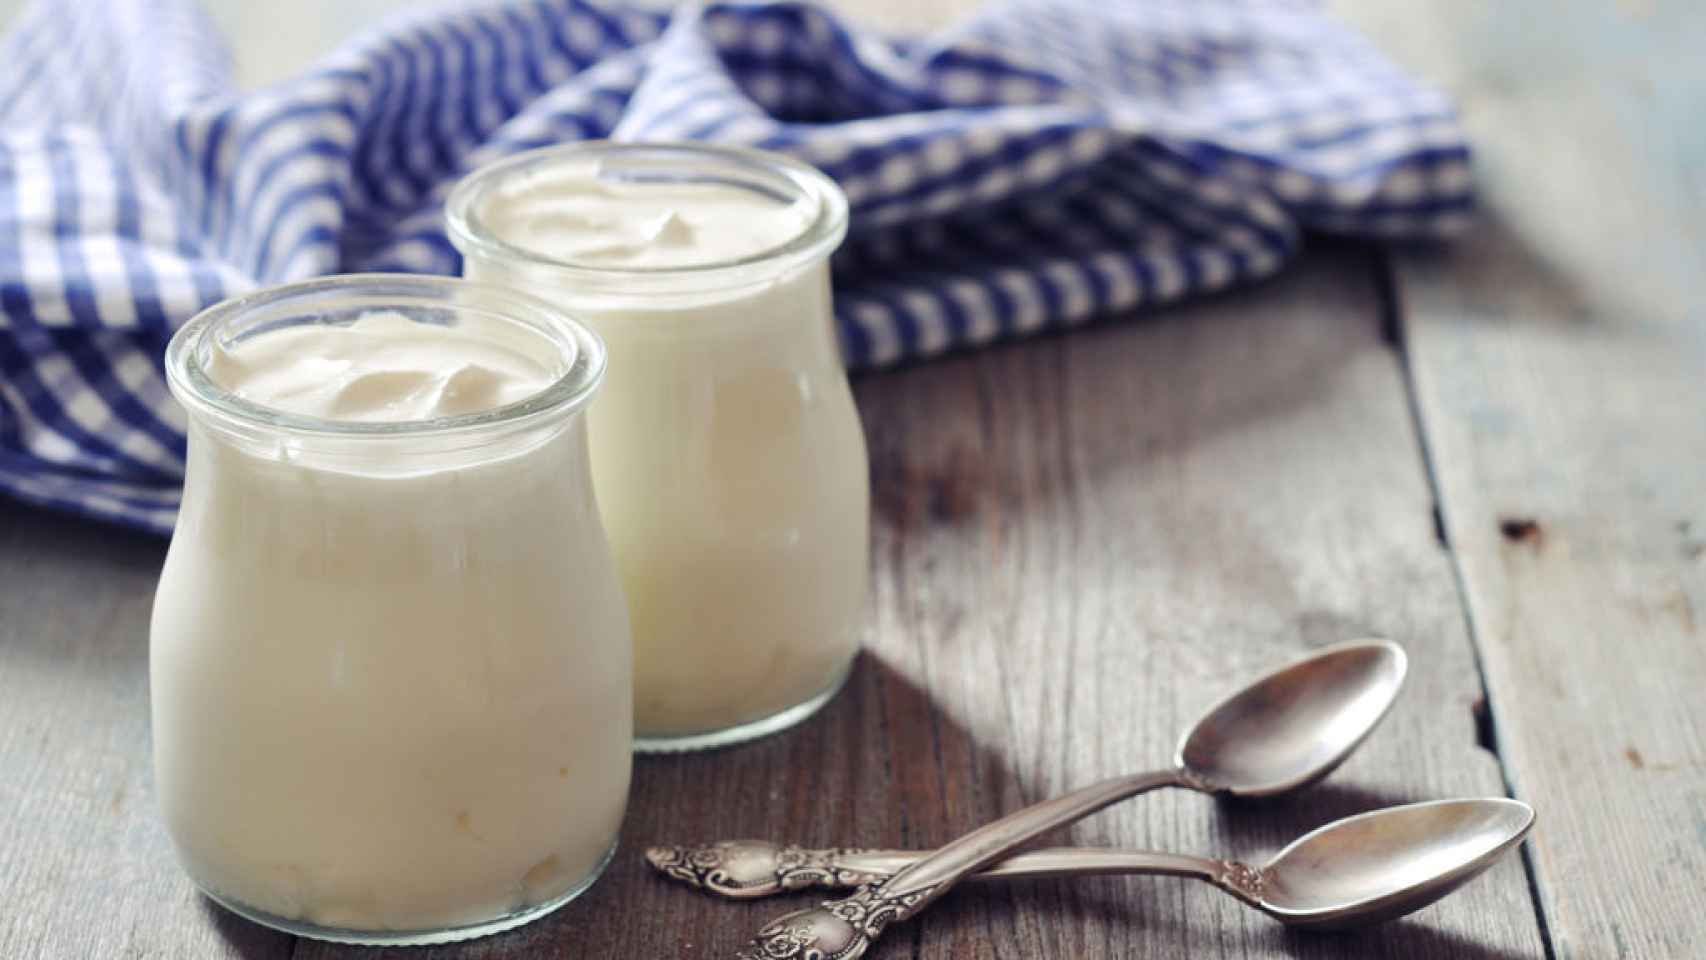 Un estudio publicado el pasado año reveló que la mayoría de yogures contienen un exceso de azúcar.